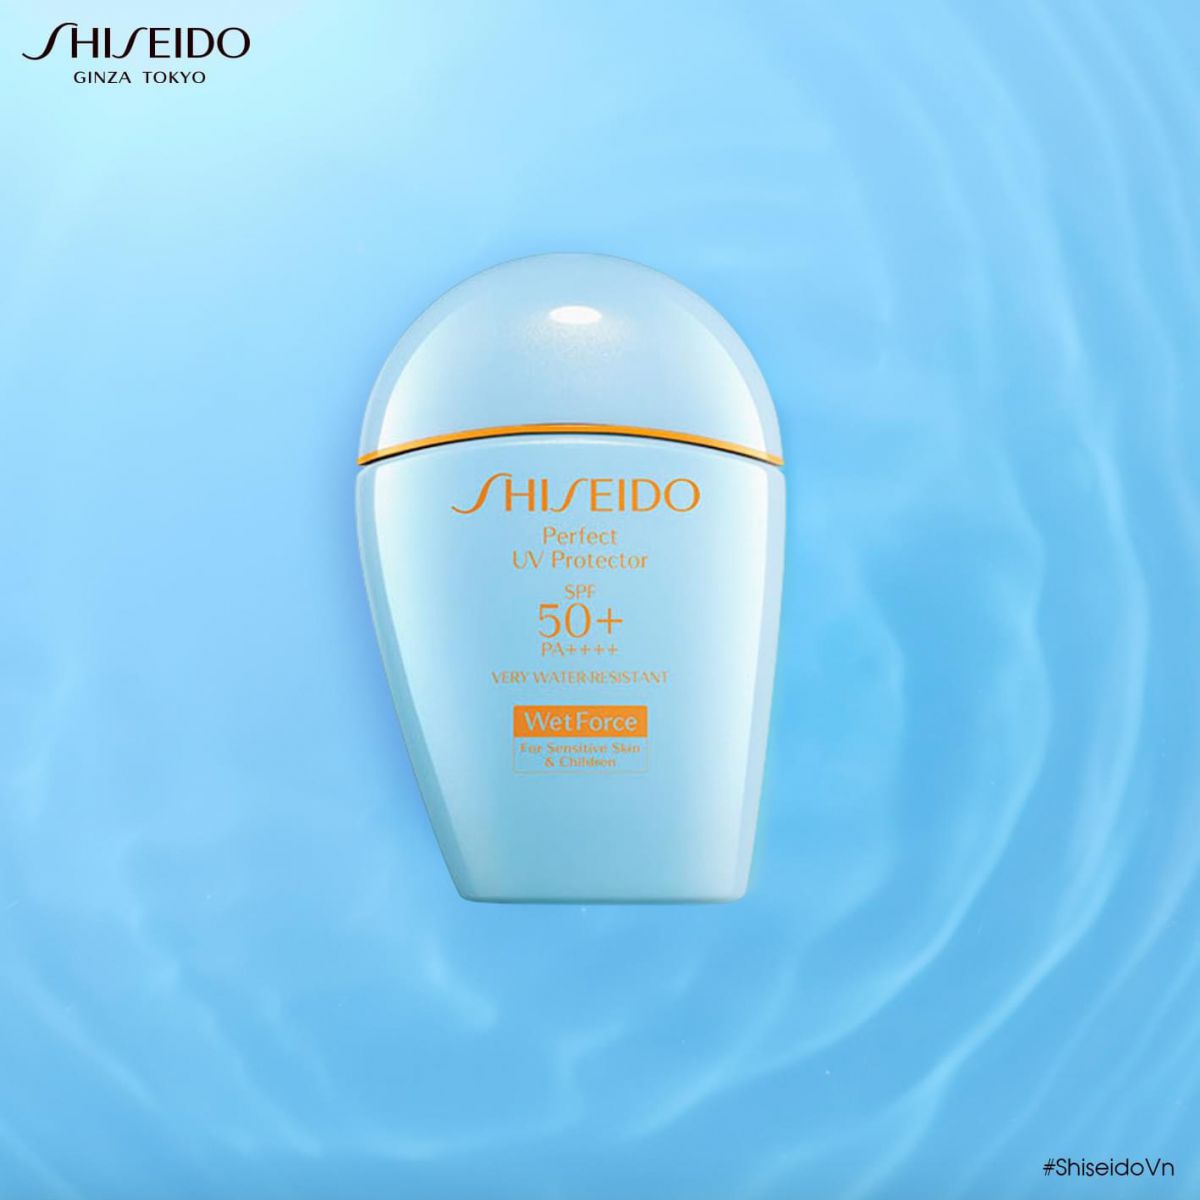 Shiseido Perfect UV Protector S được ứng dụng công nghệ WetForce giúp hỗ trợ bảo vệ làn da khi tiếp xúc với ánh nắng mặt trời